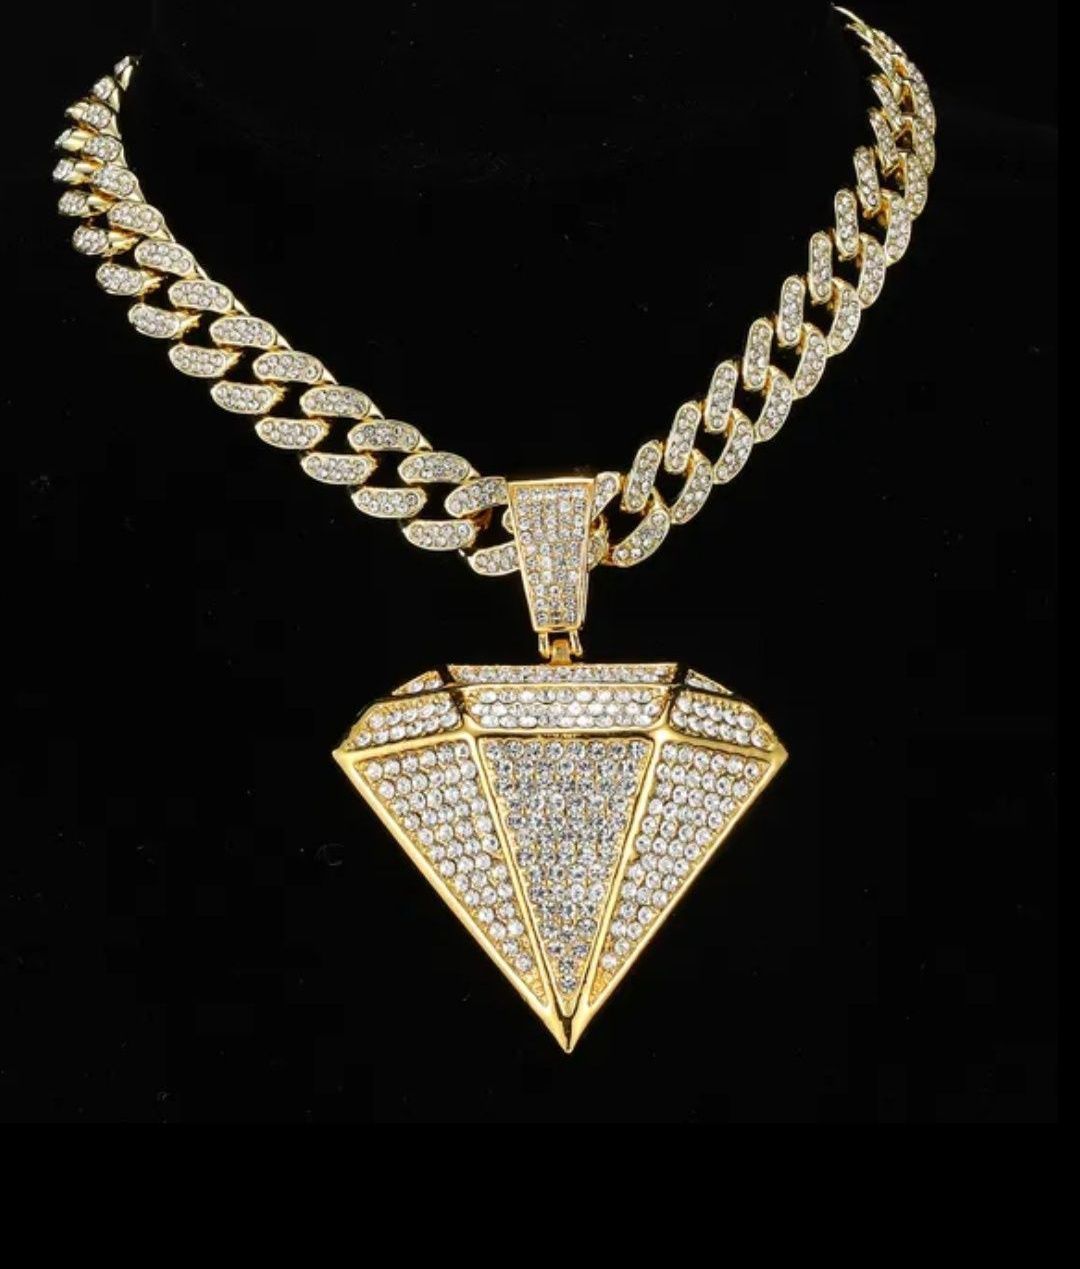 Lanț Cuban + pandantiv diamant
lung. 50 cm , pand. 7.4 cm X 5.4 cm